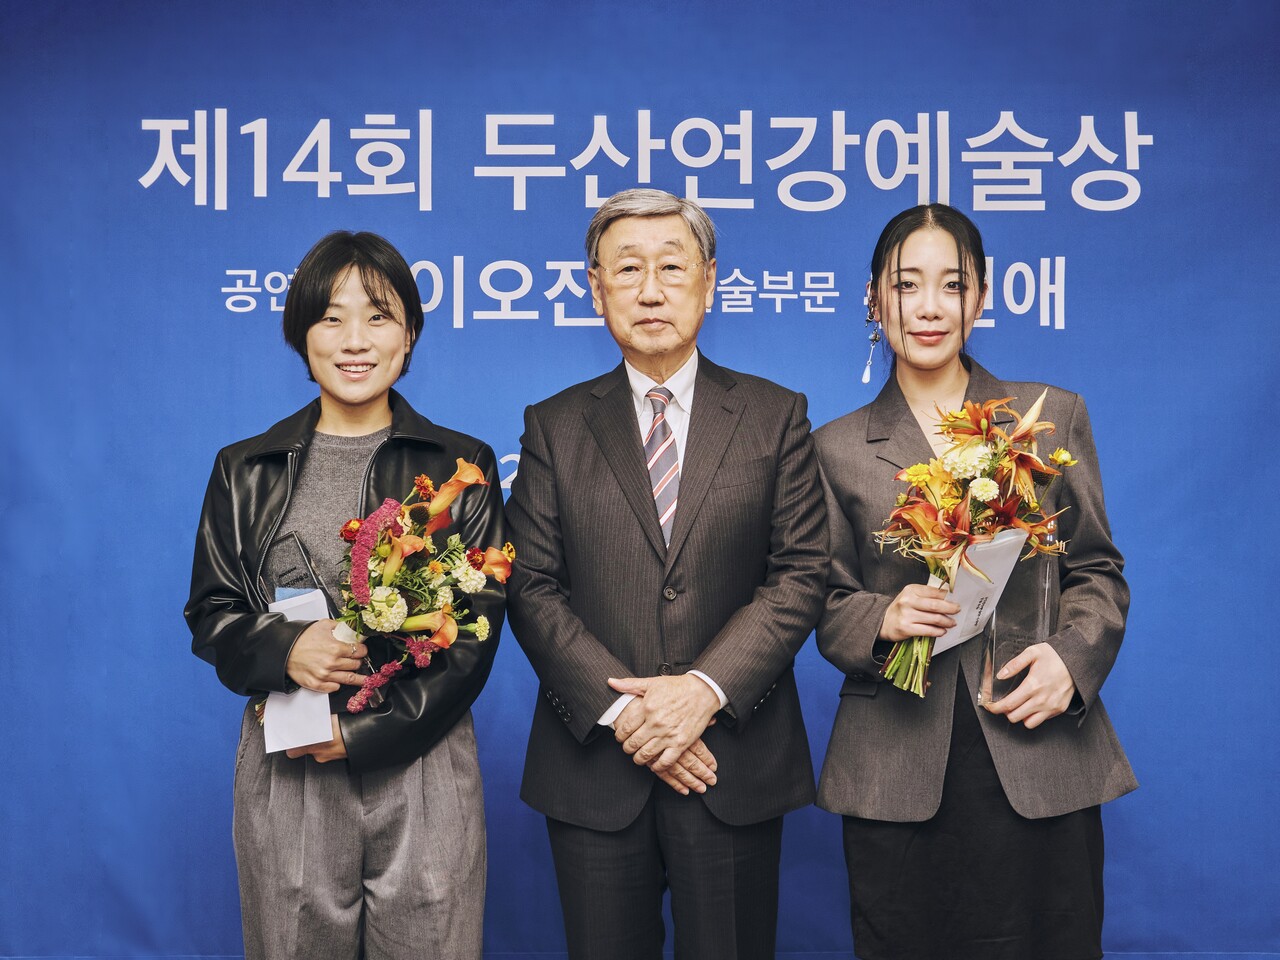 △ 제14회 두산연강예술상 수상자 이오진(왼쪽부터), 박용현 두산연강재단 이사장, 수상자 유신애